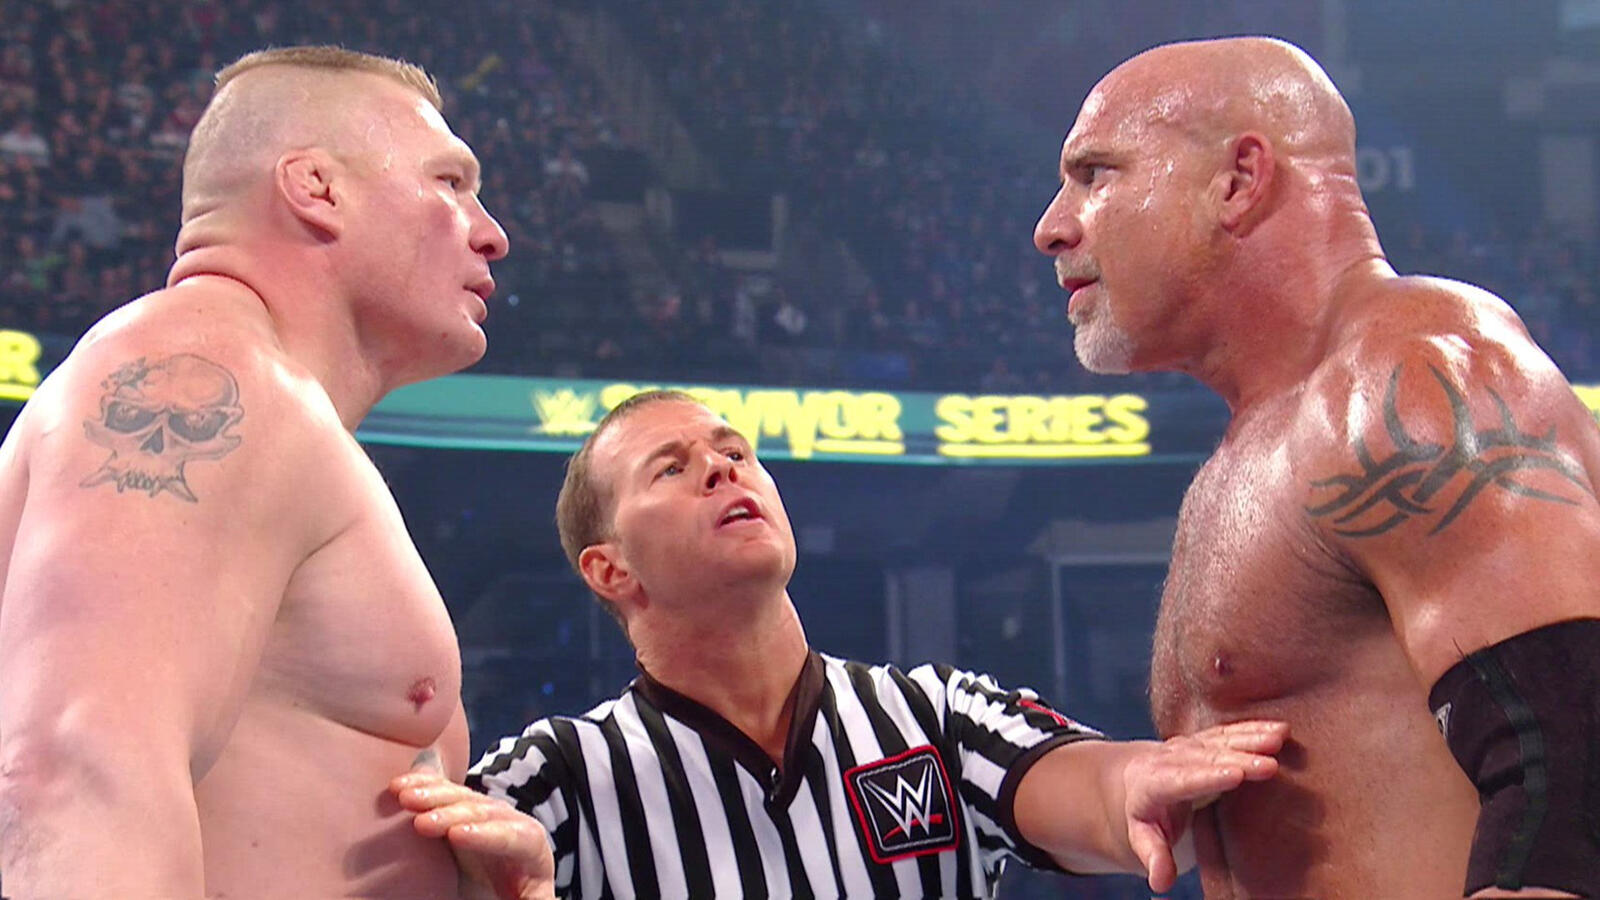 Possível motivo para a vitória dominante de Goldberg sobre Brock Lesnar